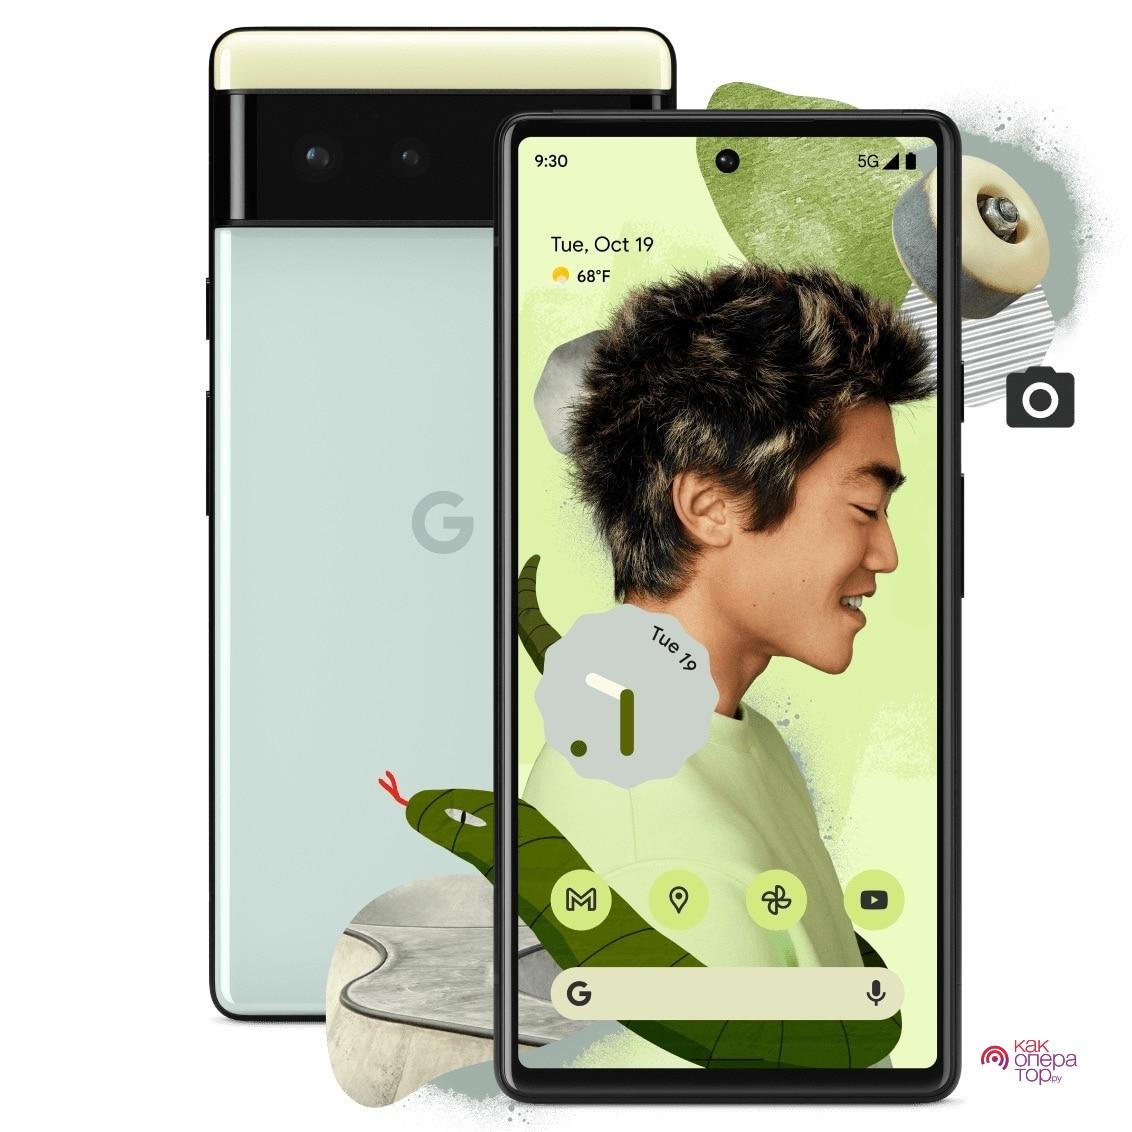 GY Google Pixel 6 Pixel 6 Pro оригинальная прямая почта Goodup M6 - купить по выгодной цене | AliExpress